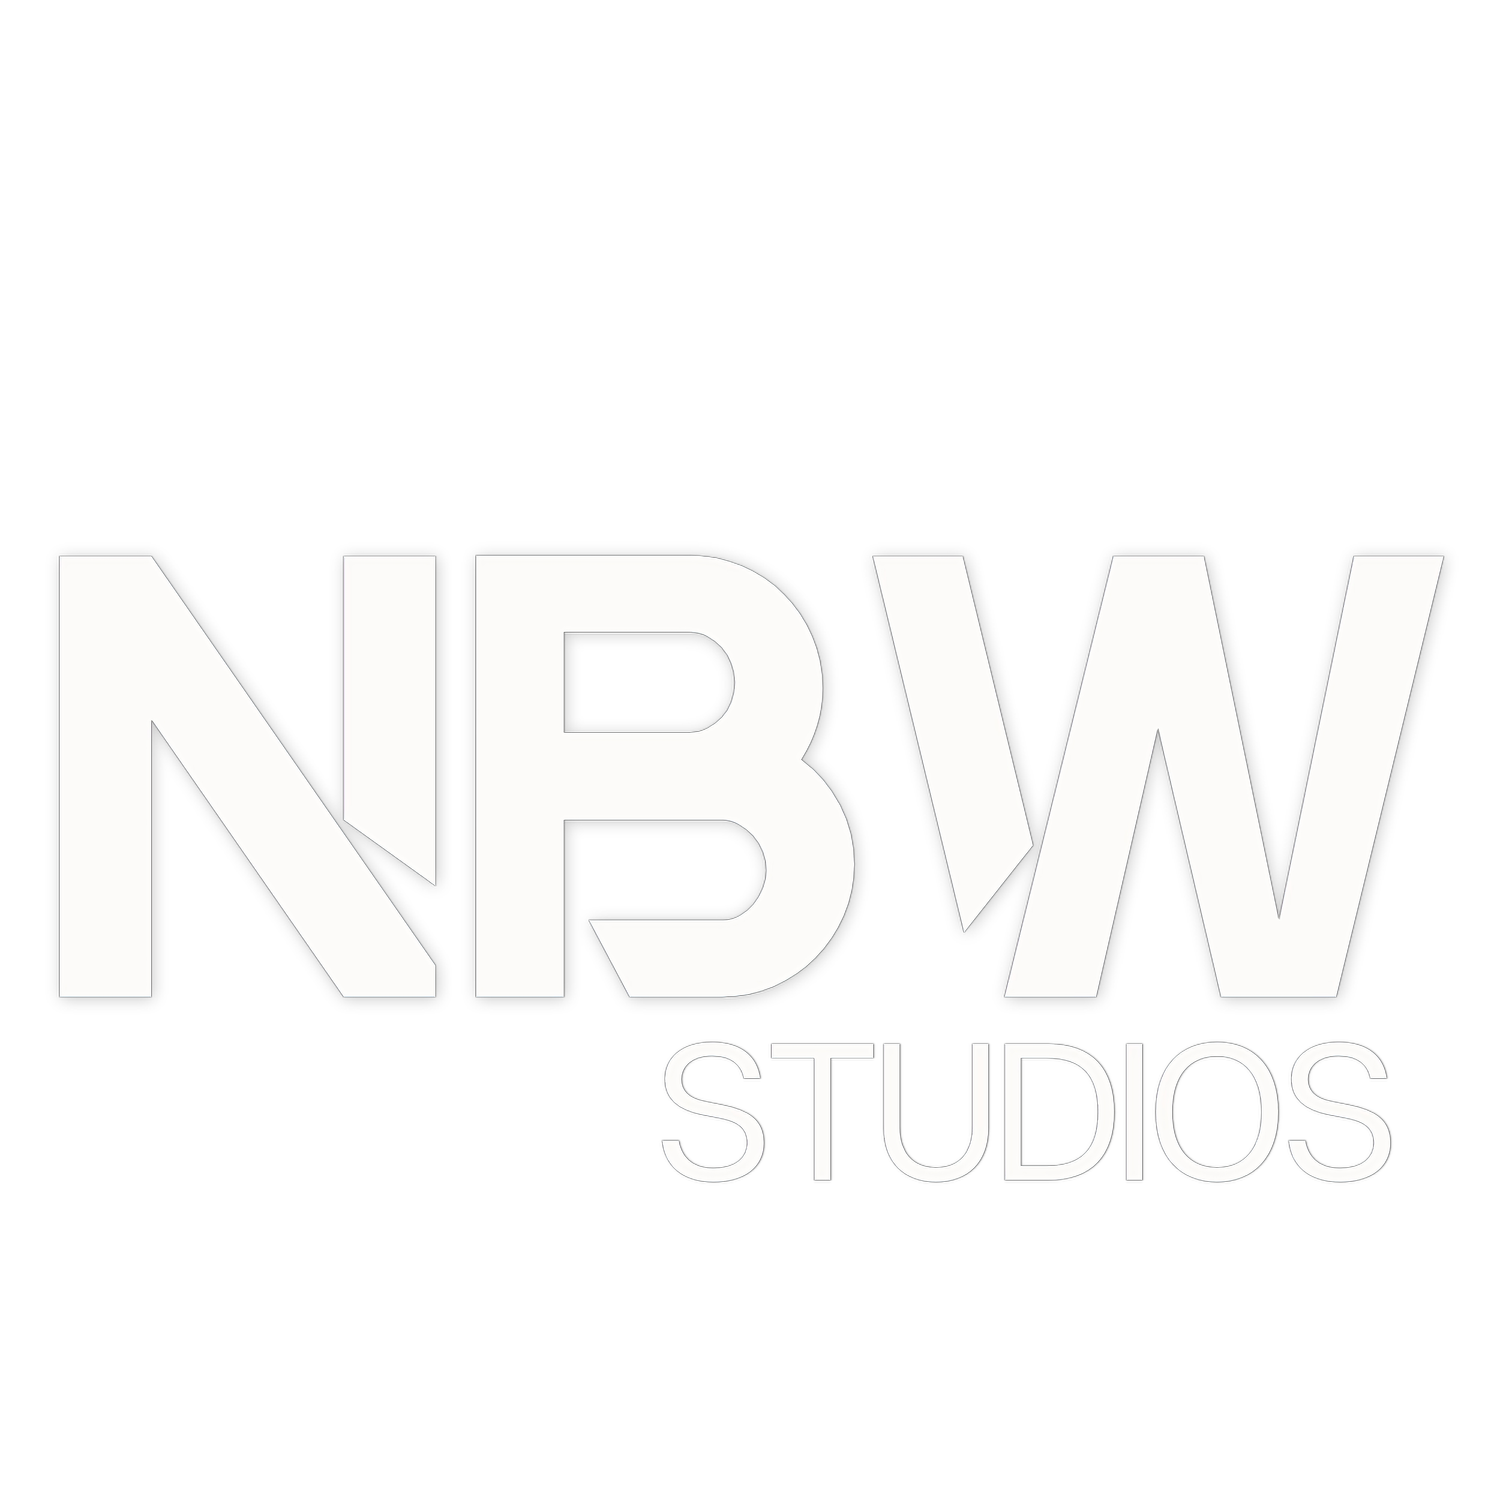 NBW Studios